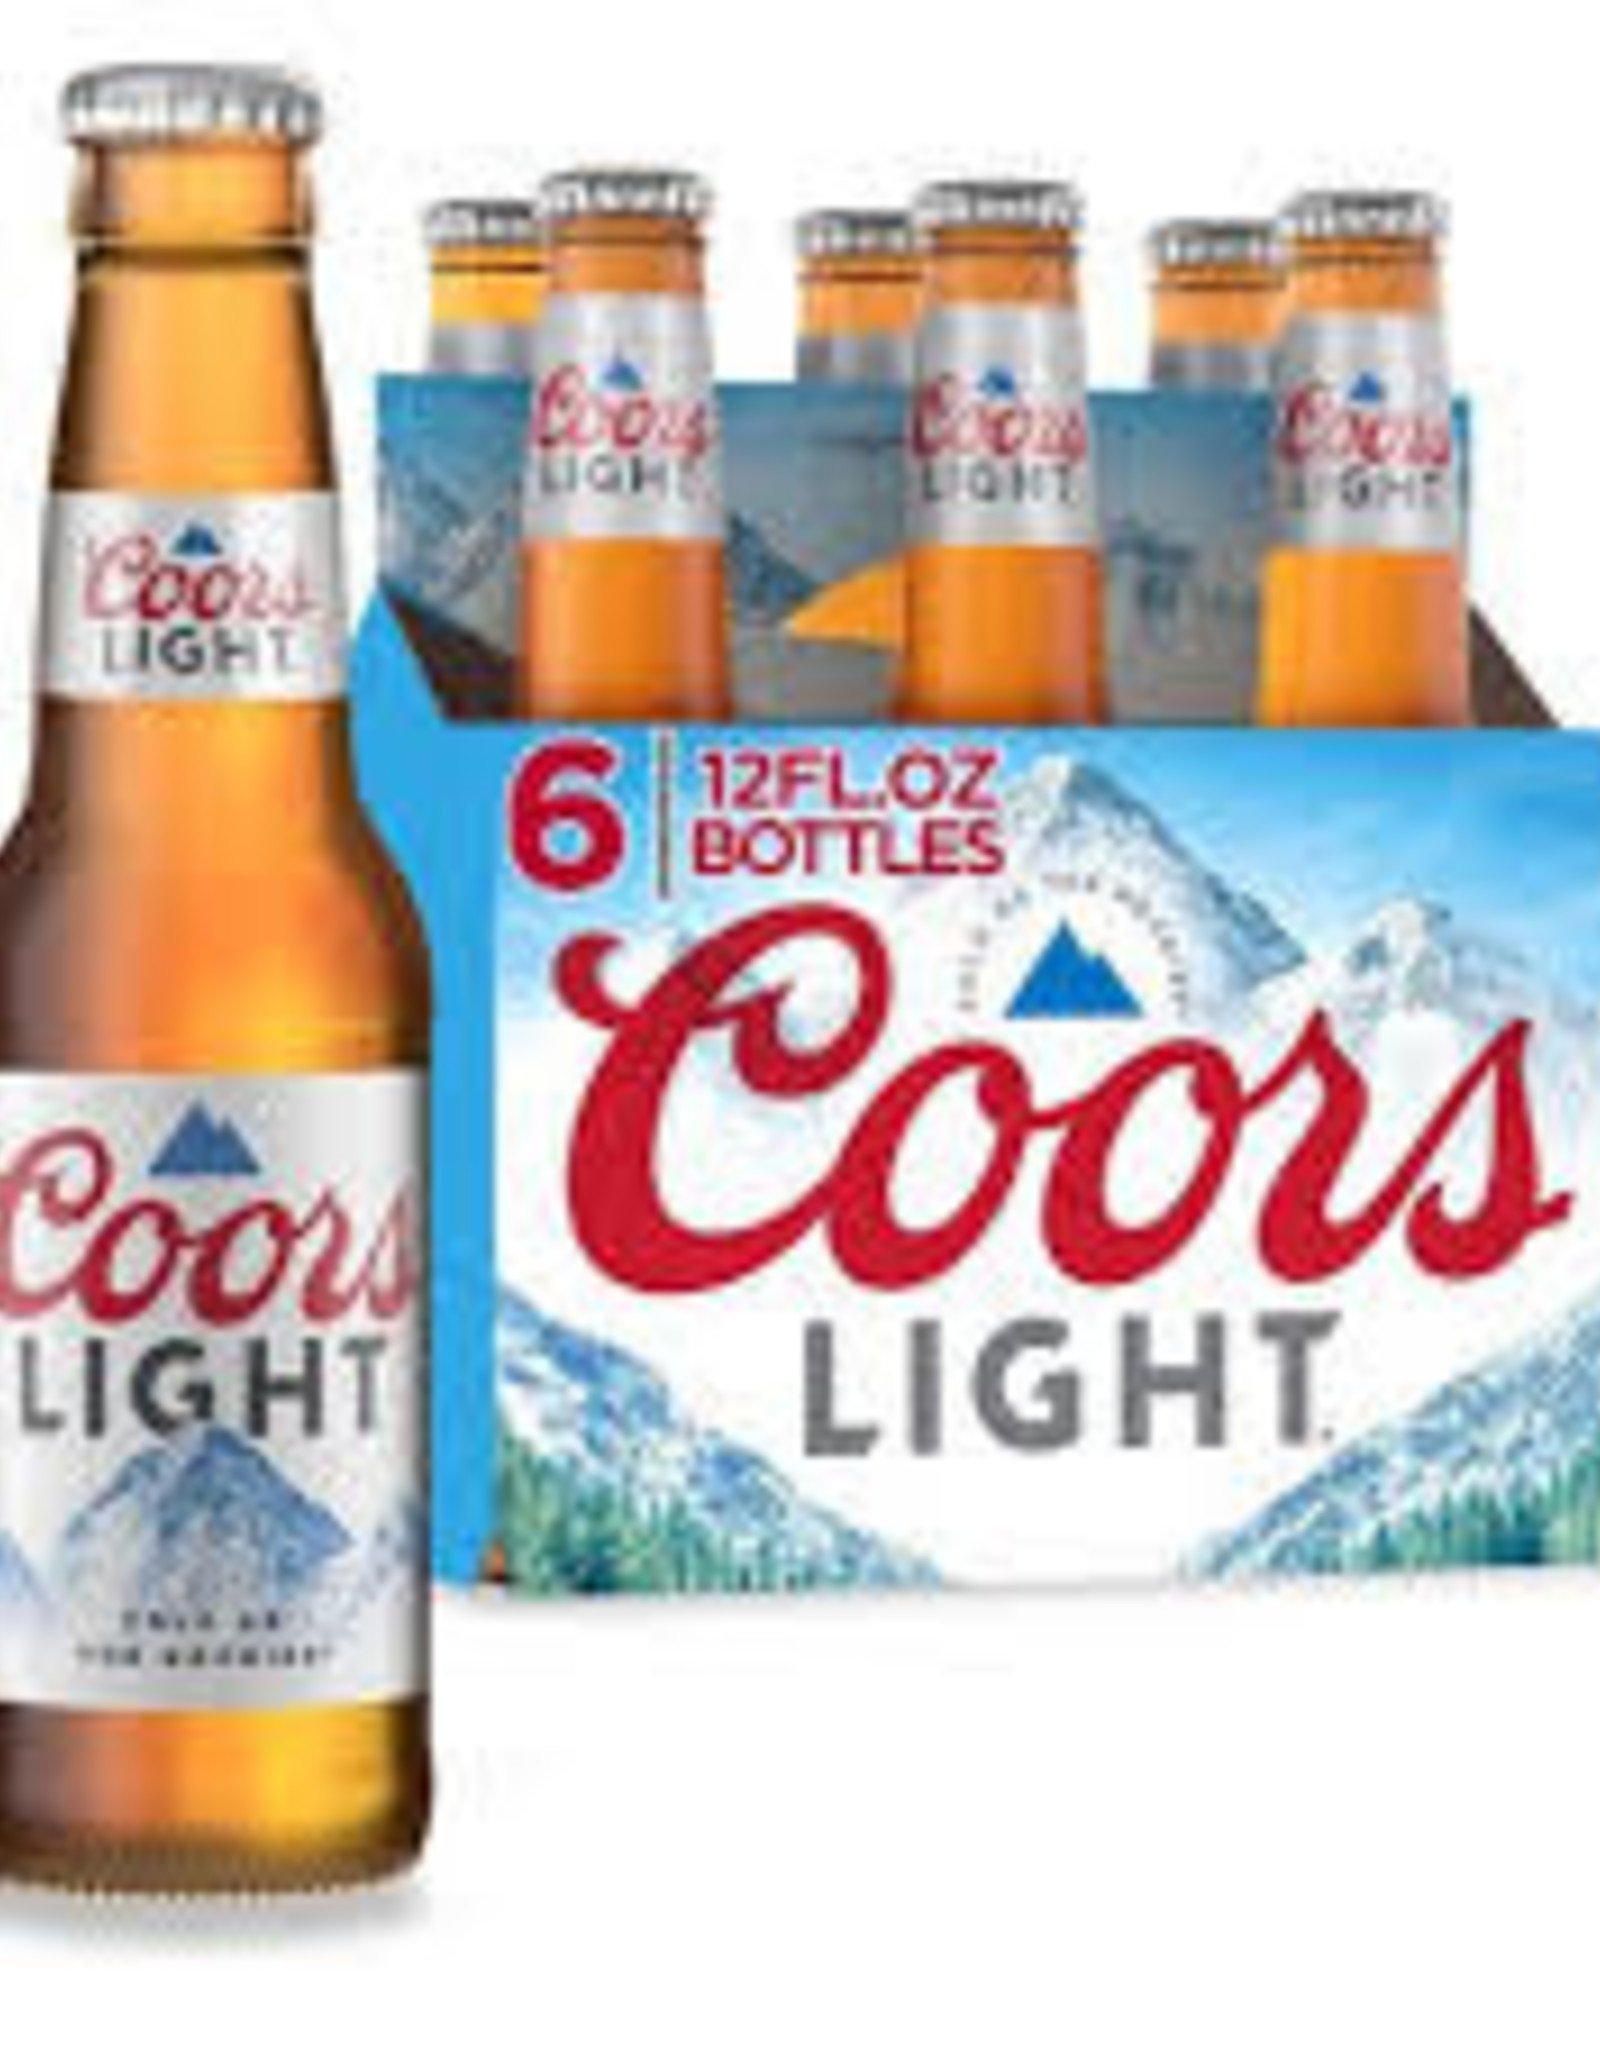 Coors Coors Light - 6pk - 12oz -  Bottles